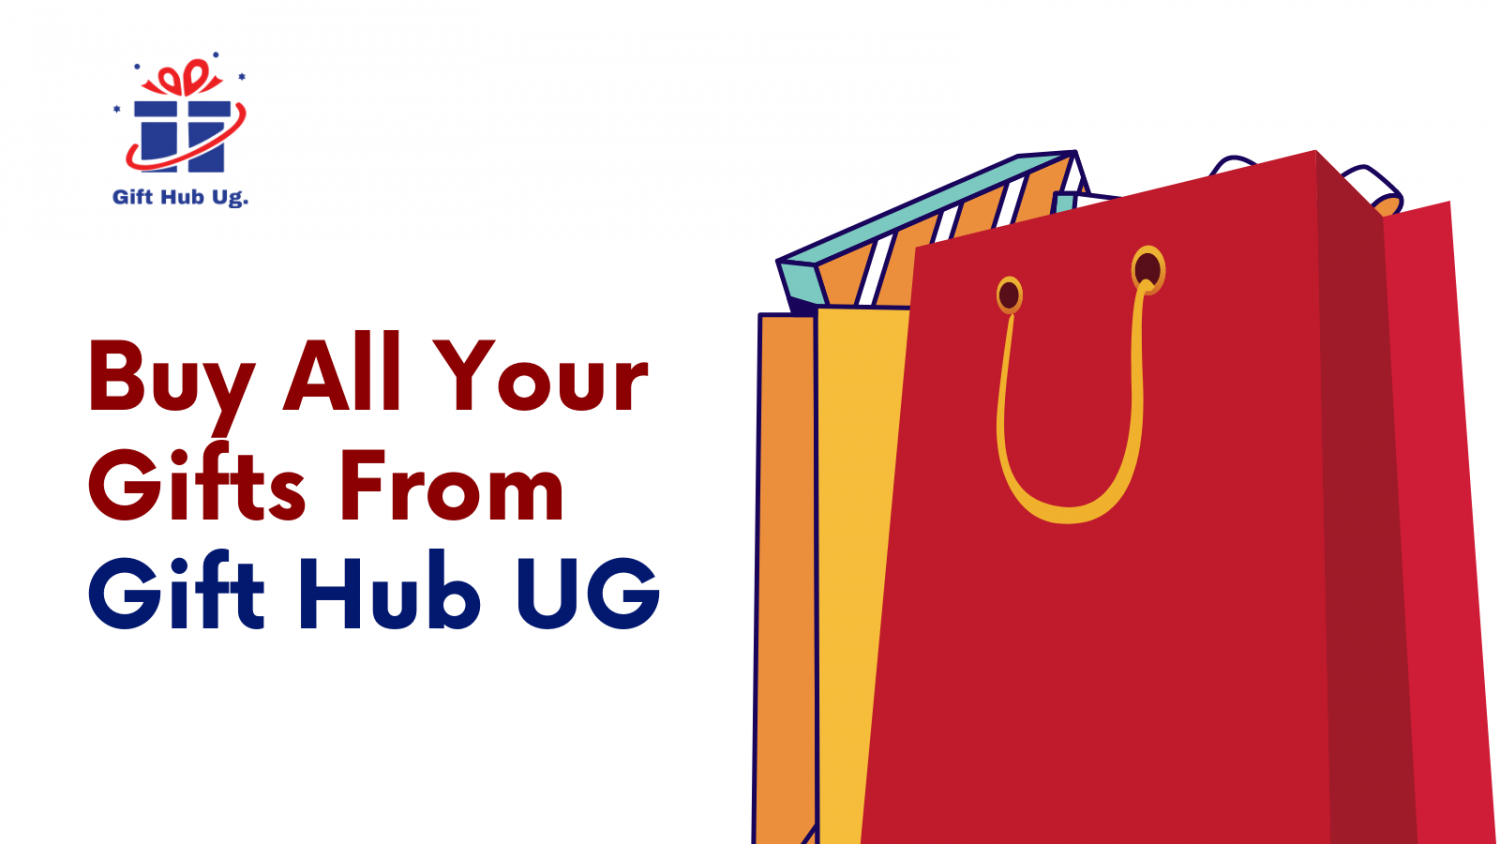 Gift Hub UG promo